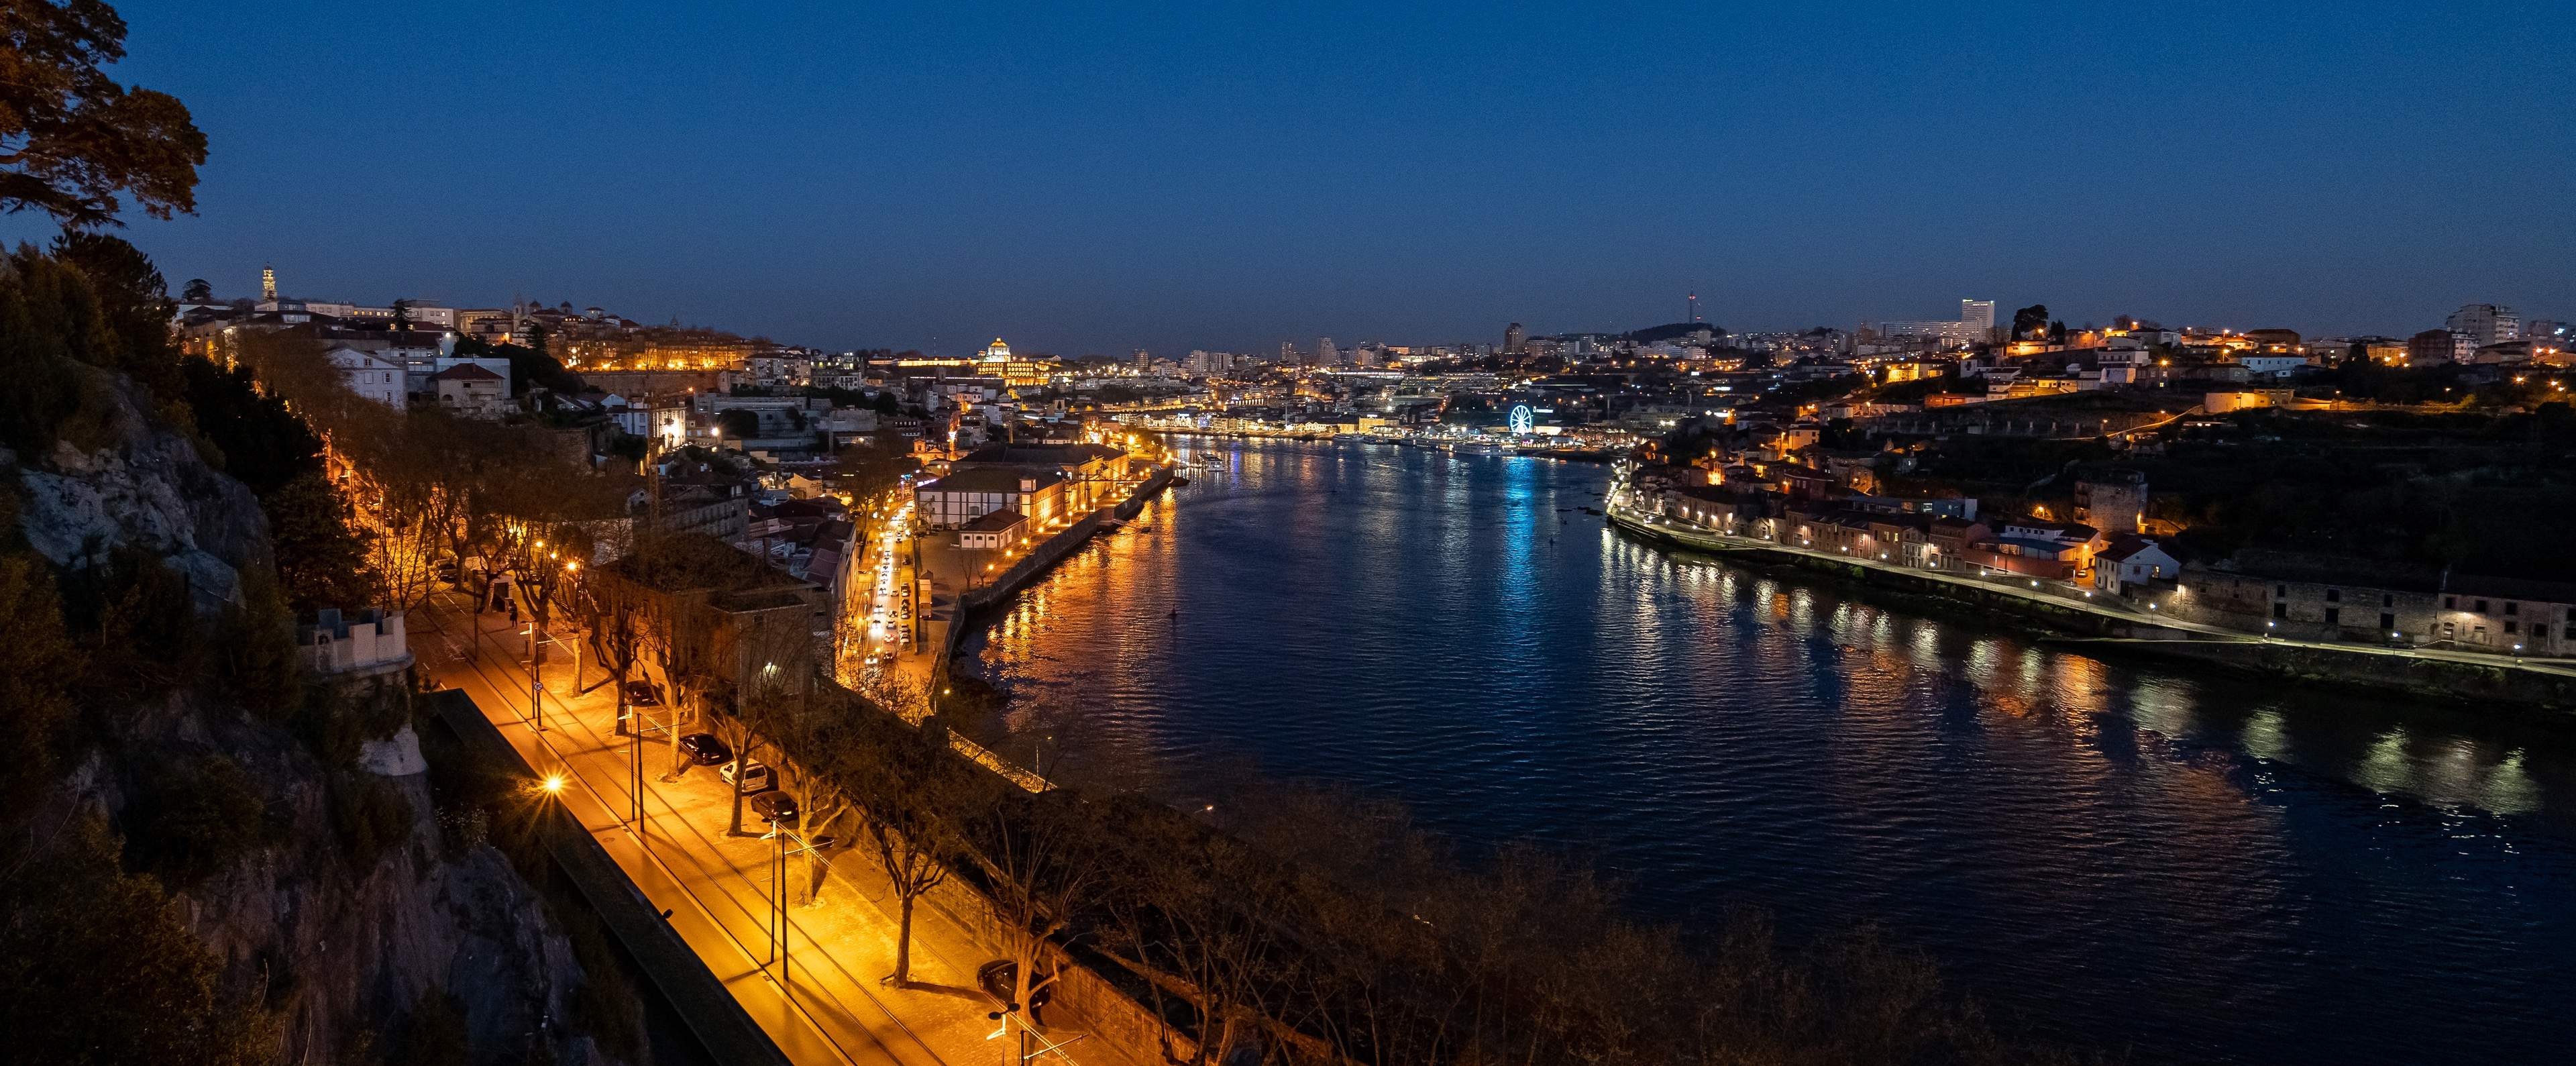 Night view over Douro River and Porto, Portugal